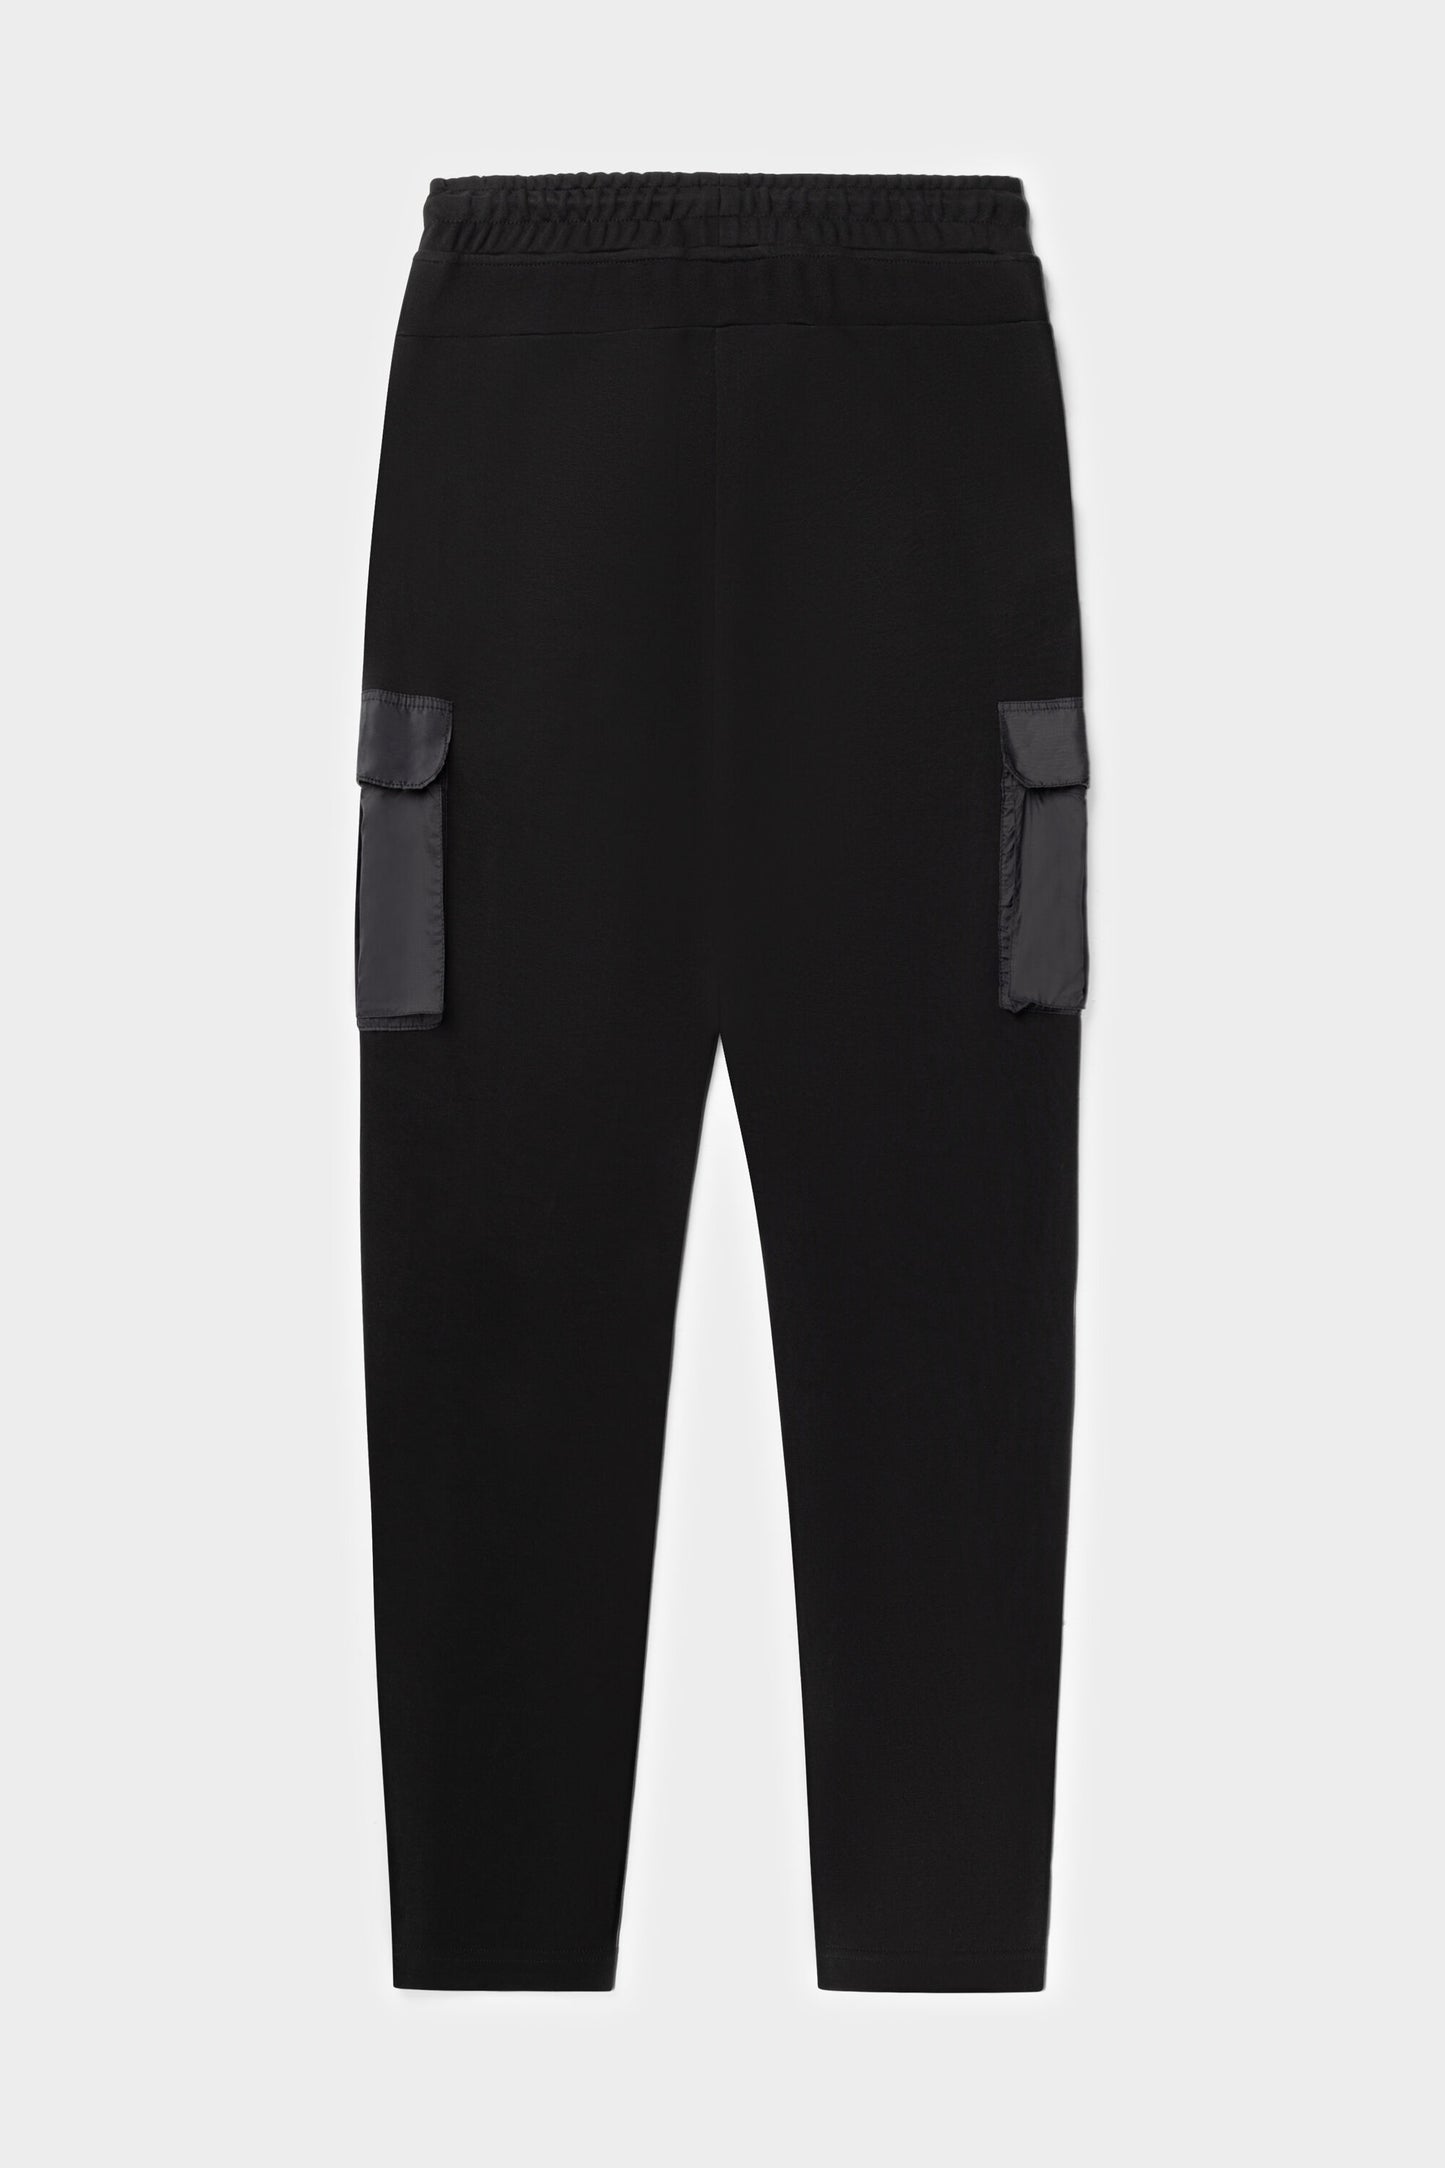 Q-Cargo Series Slim Classic Sweatpants Jet Black